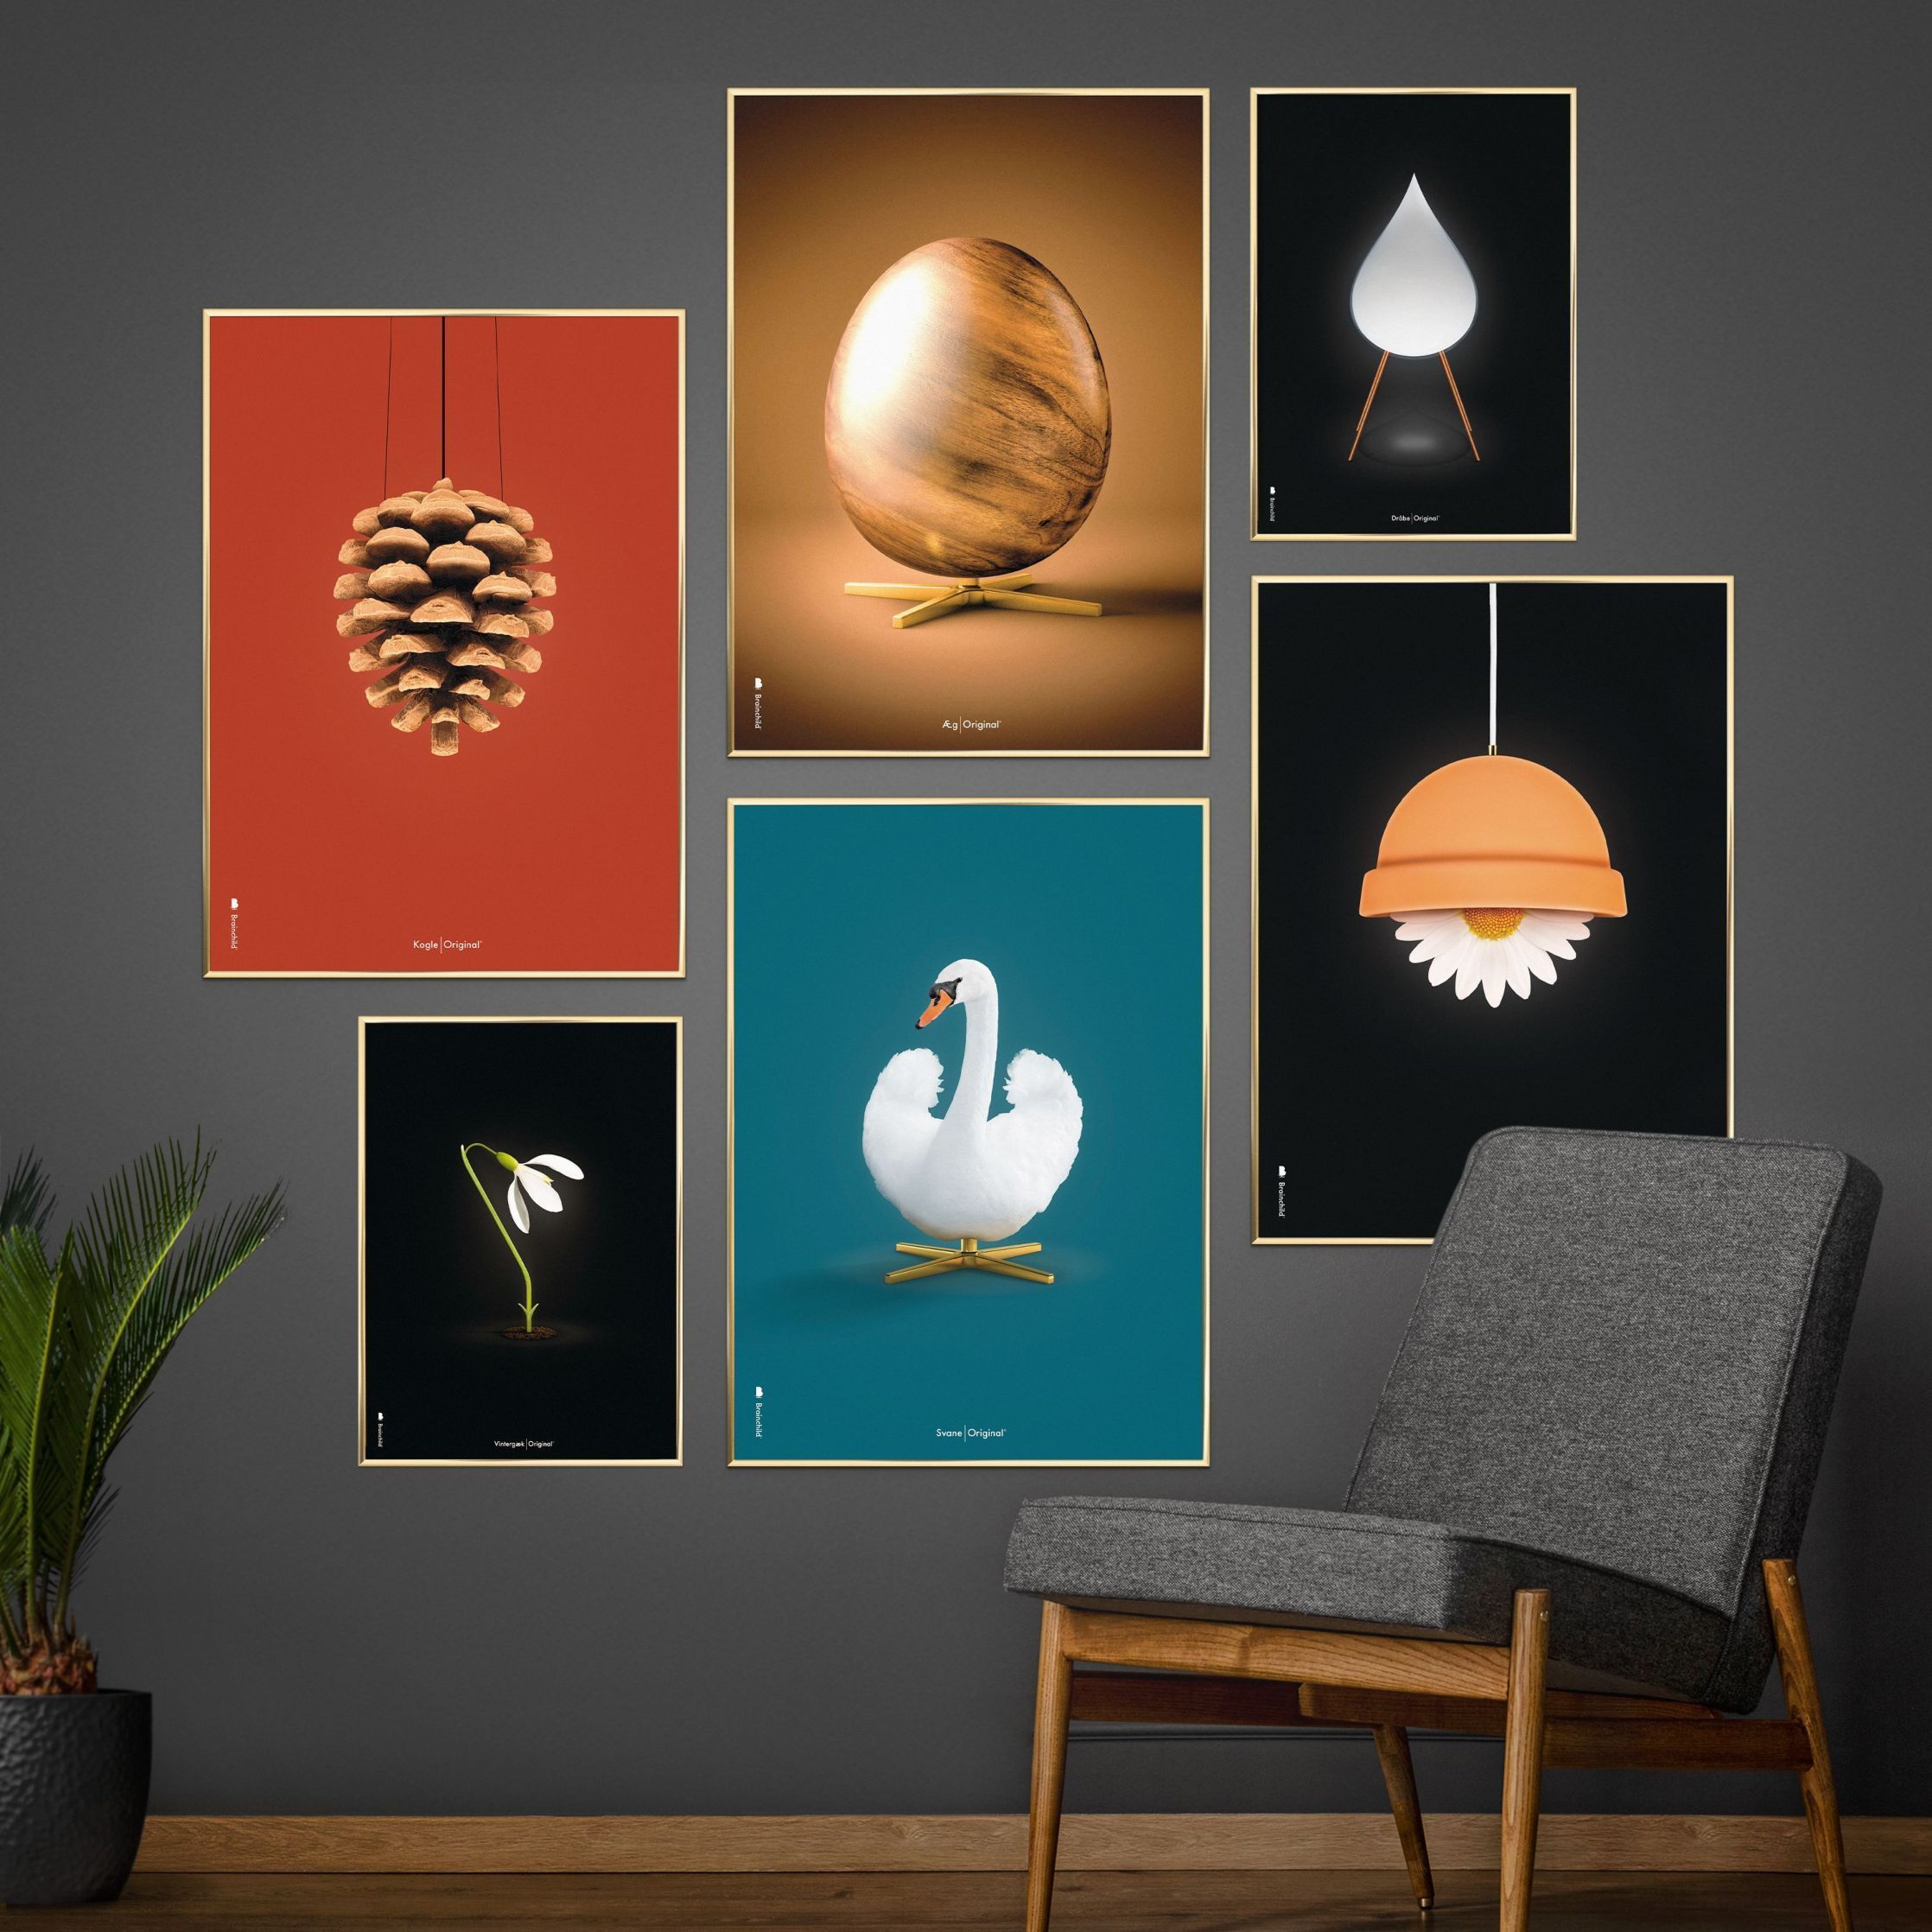 Brainchild Swan Classic Poster, ram i mörkt trä A5, petroleumblå bakgrund